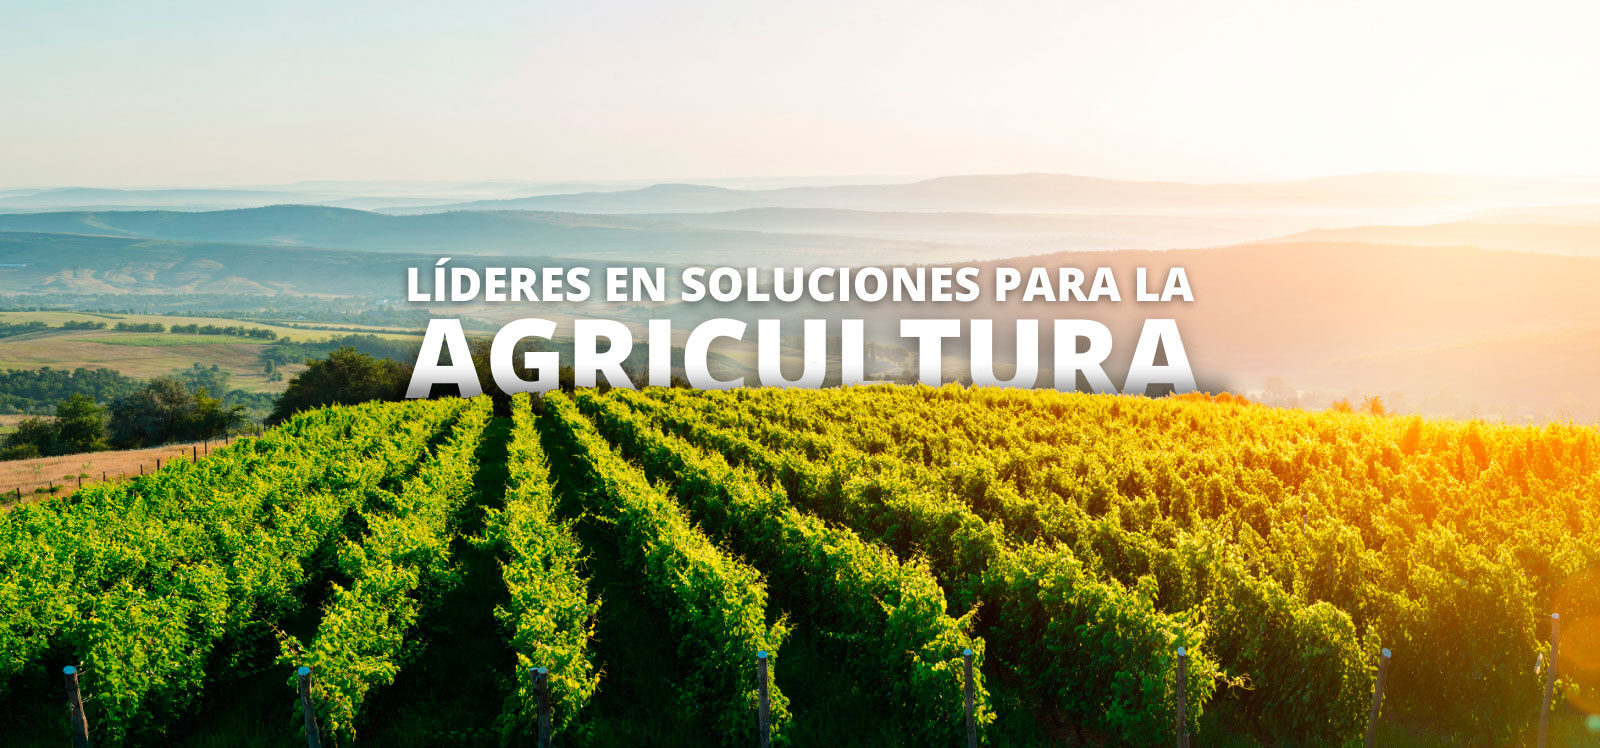 Líderes en soluciones para agricultura